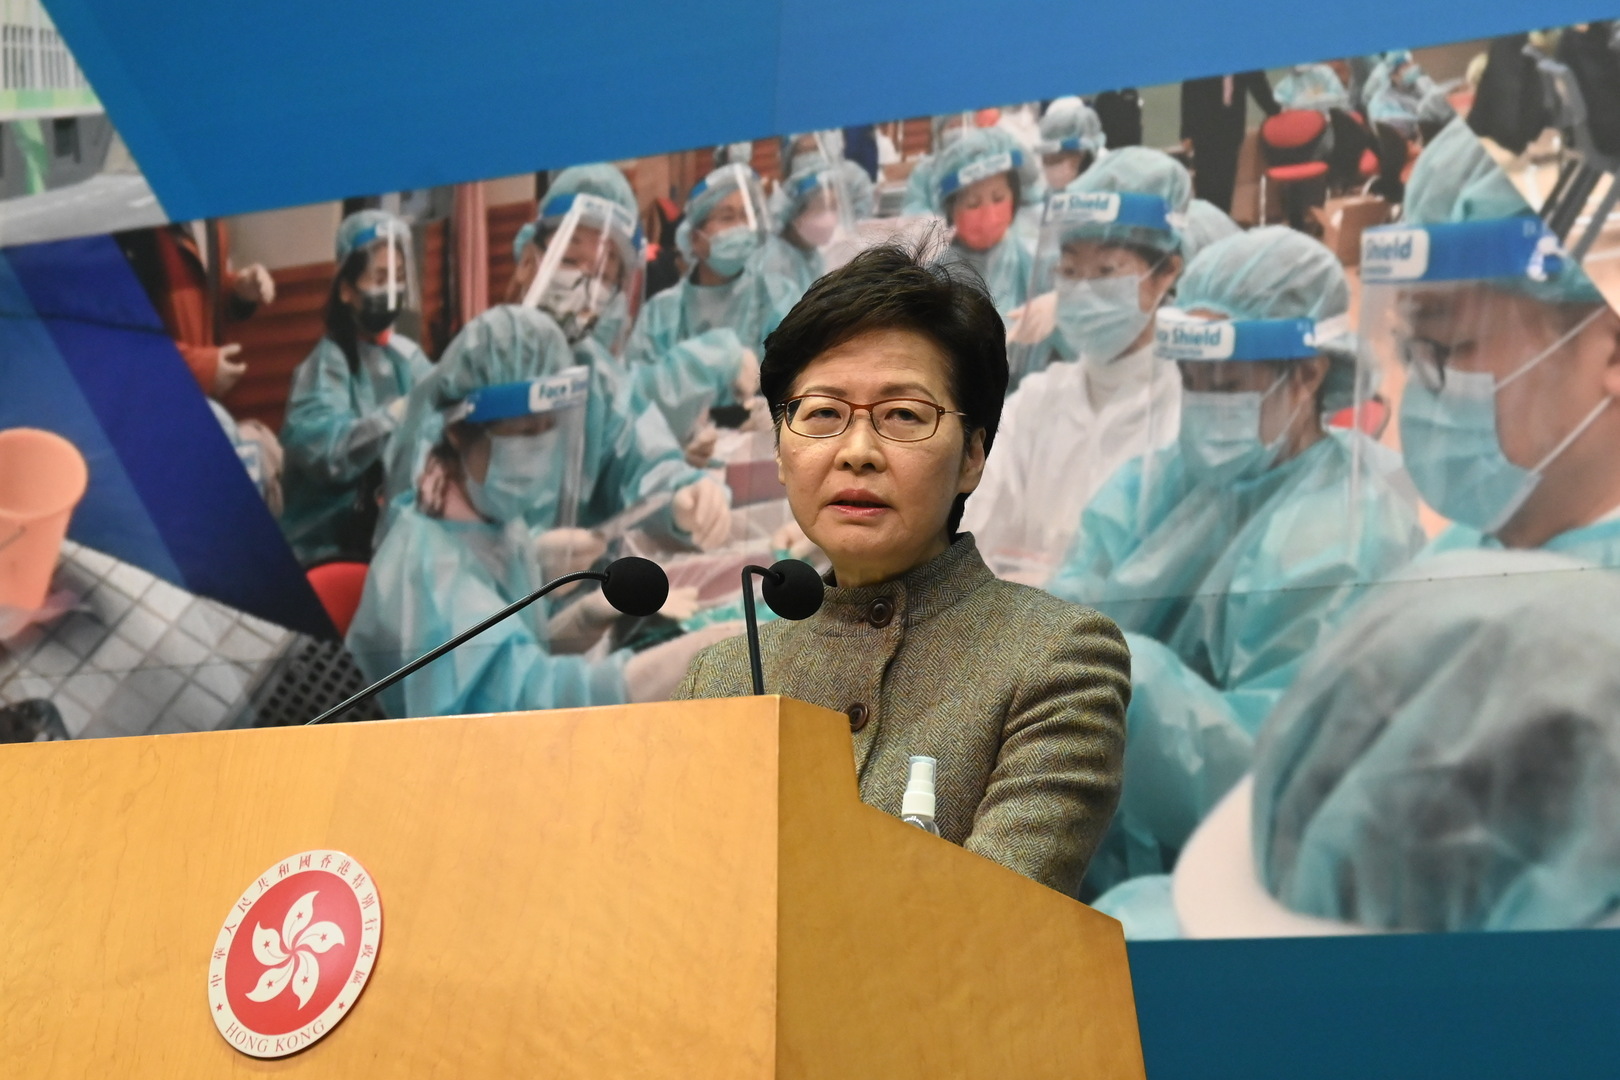 زعيمة هونغ كونغ: لن أترشح لولاية ثانية